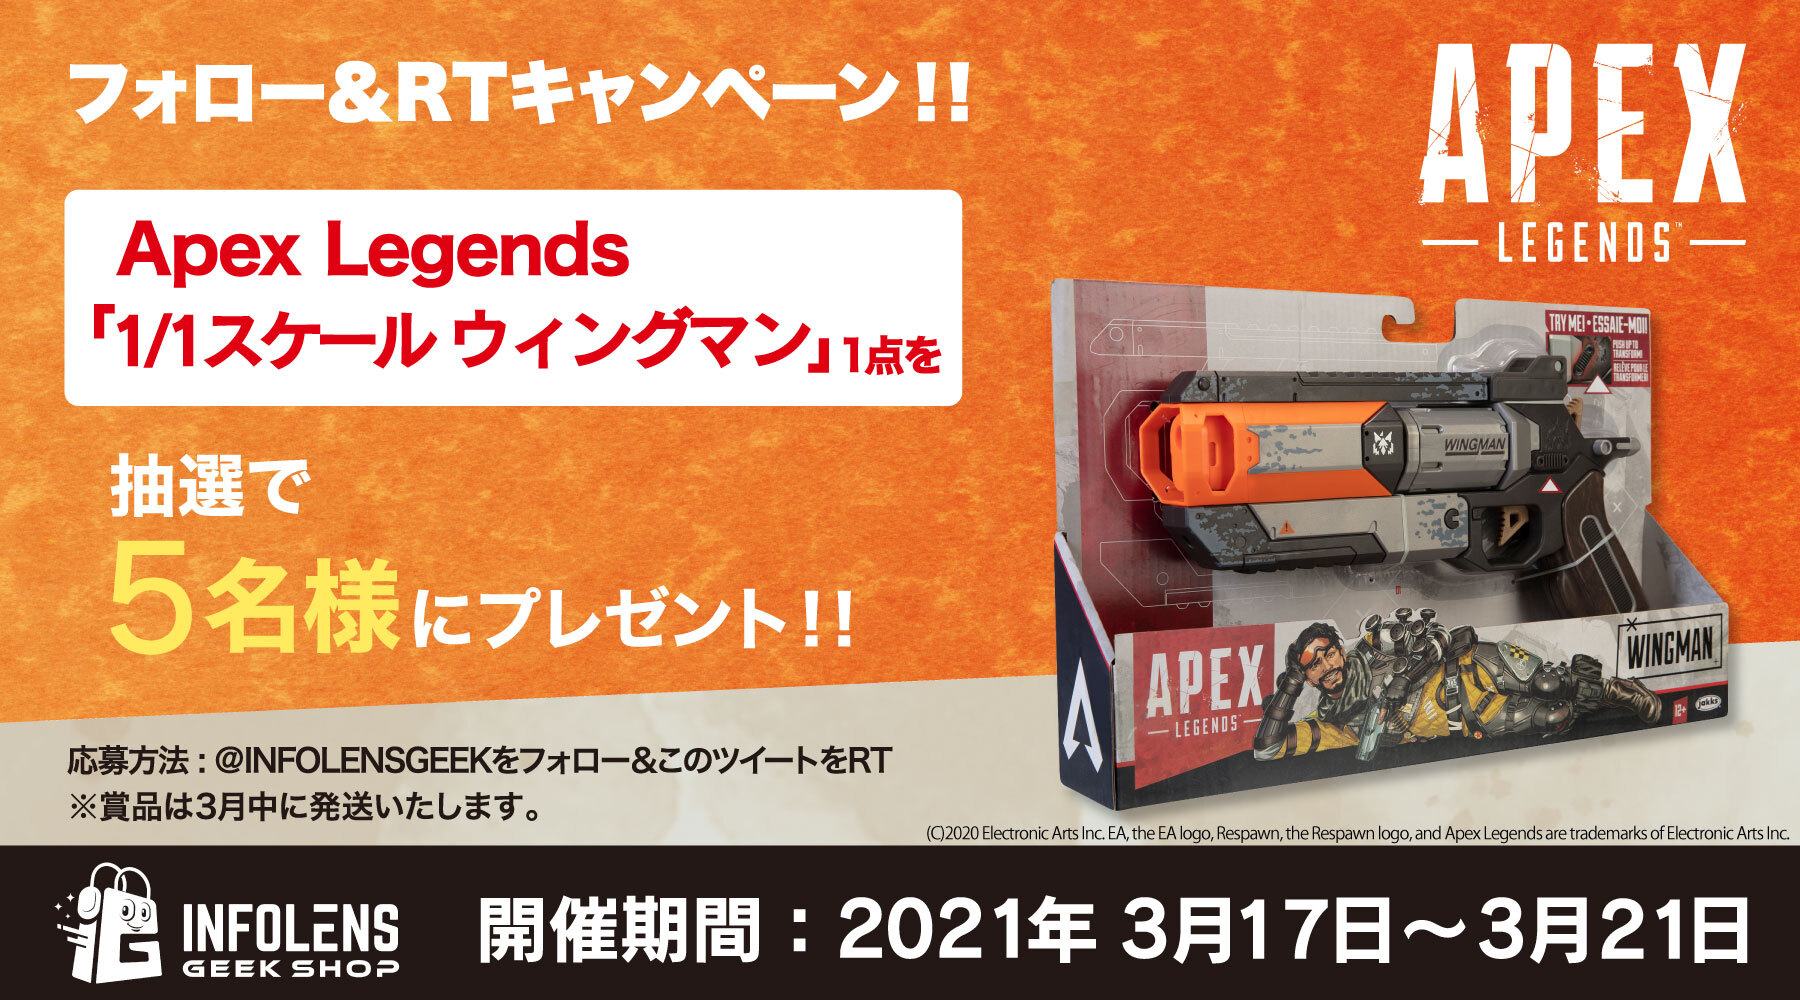 大人気ゲーム Apex Legends の 1 1スケール ウィングマン 再販 決定 プレゼントキャンペーンを21年3月17日 21日開催 インフォレンズ株式会社のプレスリリース